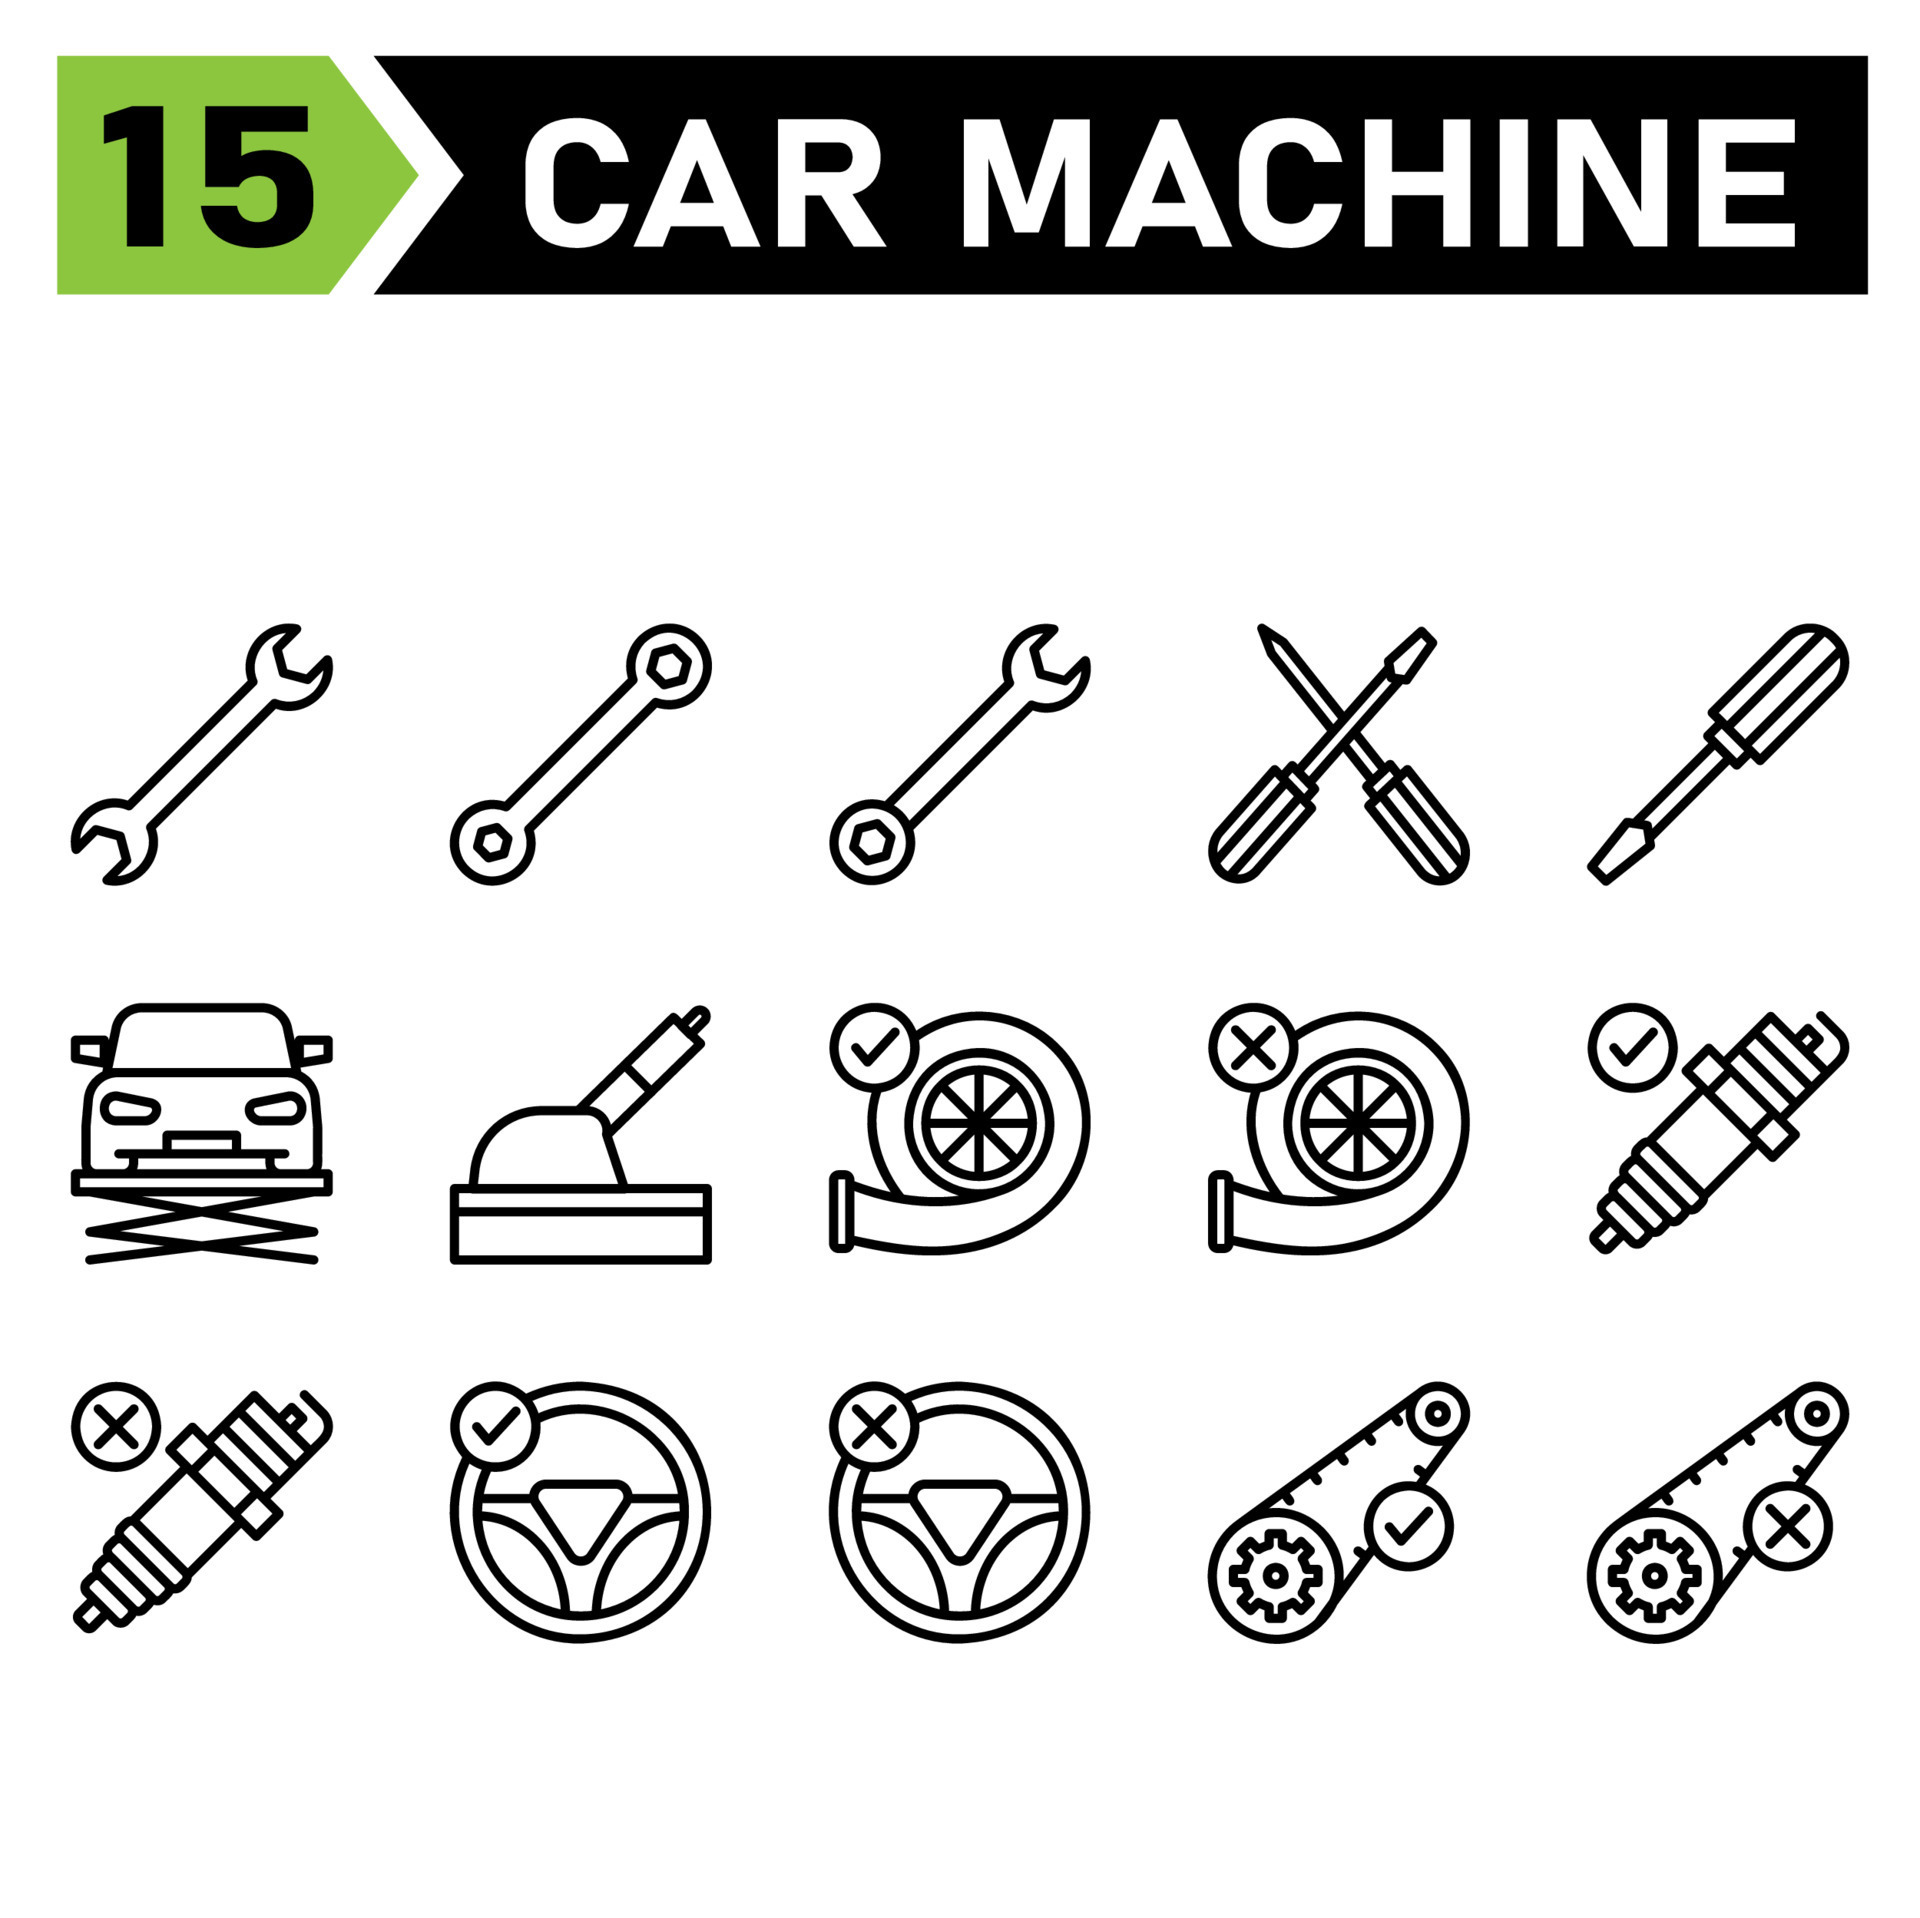 Das Symbolset für Automaschinen umfasst Werkzeuge, Werkzeug,  Schraubenschlüssel, Einstellung, Auto, Schraubendreher, Aufzug, Service,  Wartung, Automobil, Handbremse, Bremse, Turbo, Maschine, Motor,  Akzeptieren, Kaputt, Funke, Stecker, Mechaniker